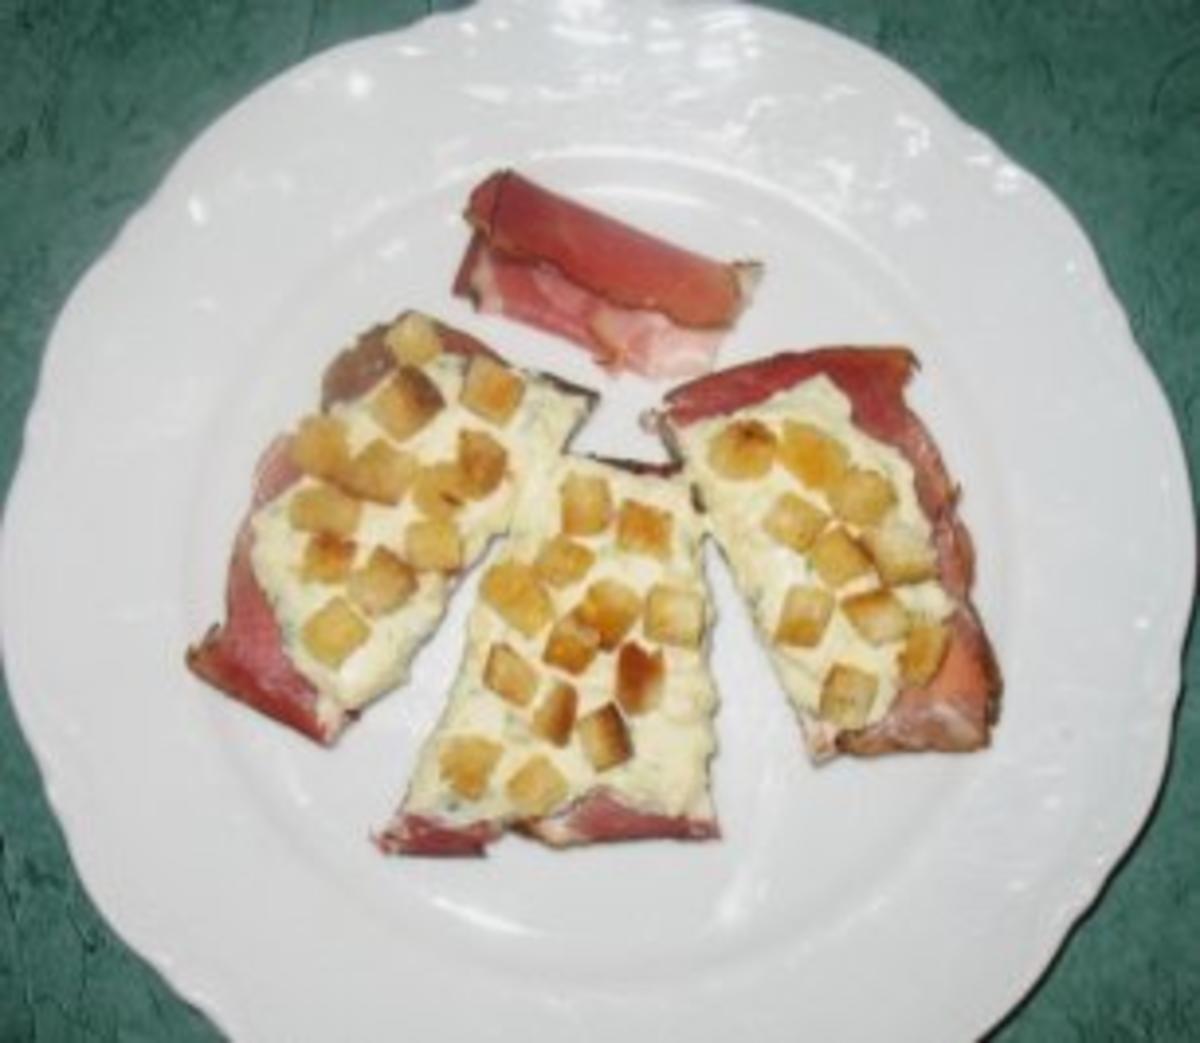 Snack/Brot - Obatzda... mild-fruchtige Variation - Rezept